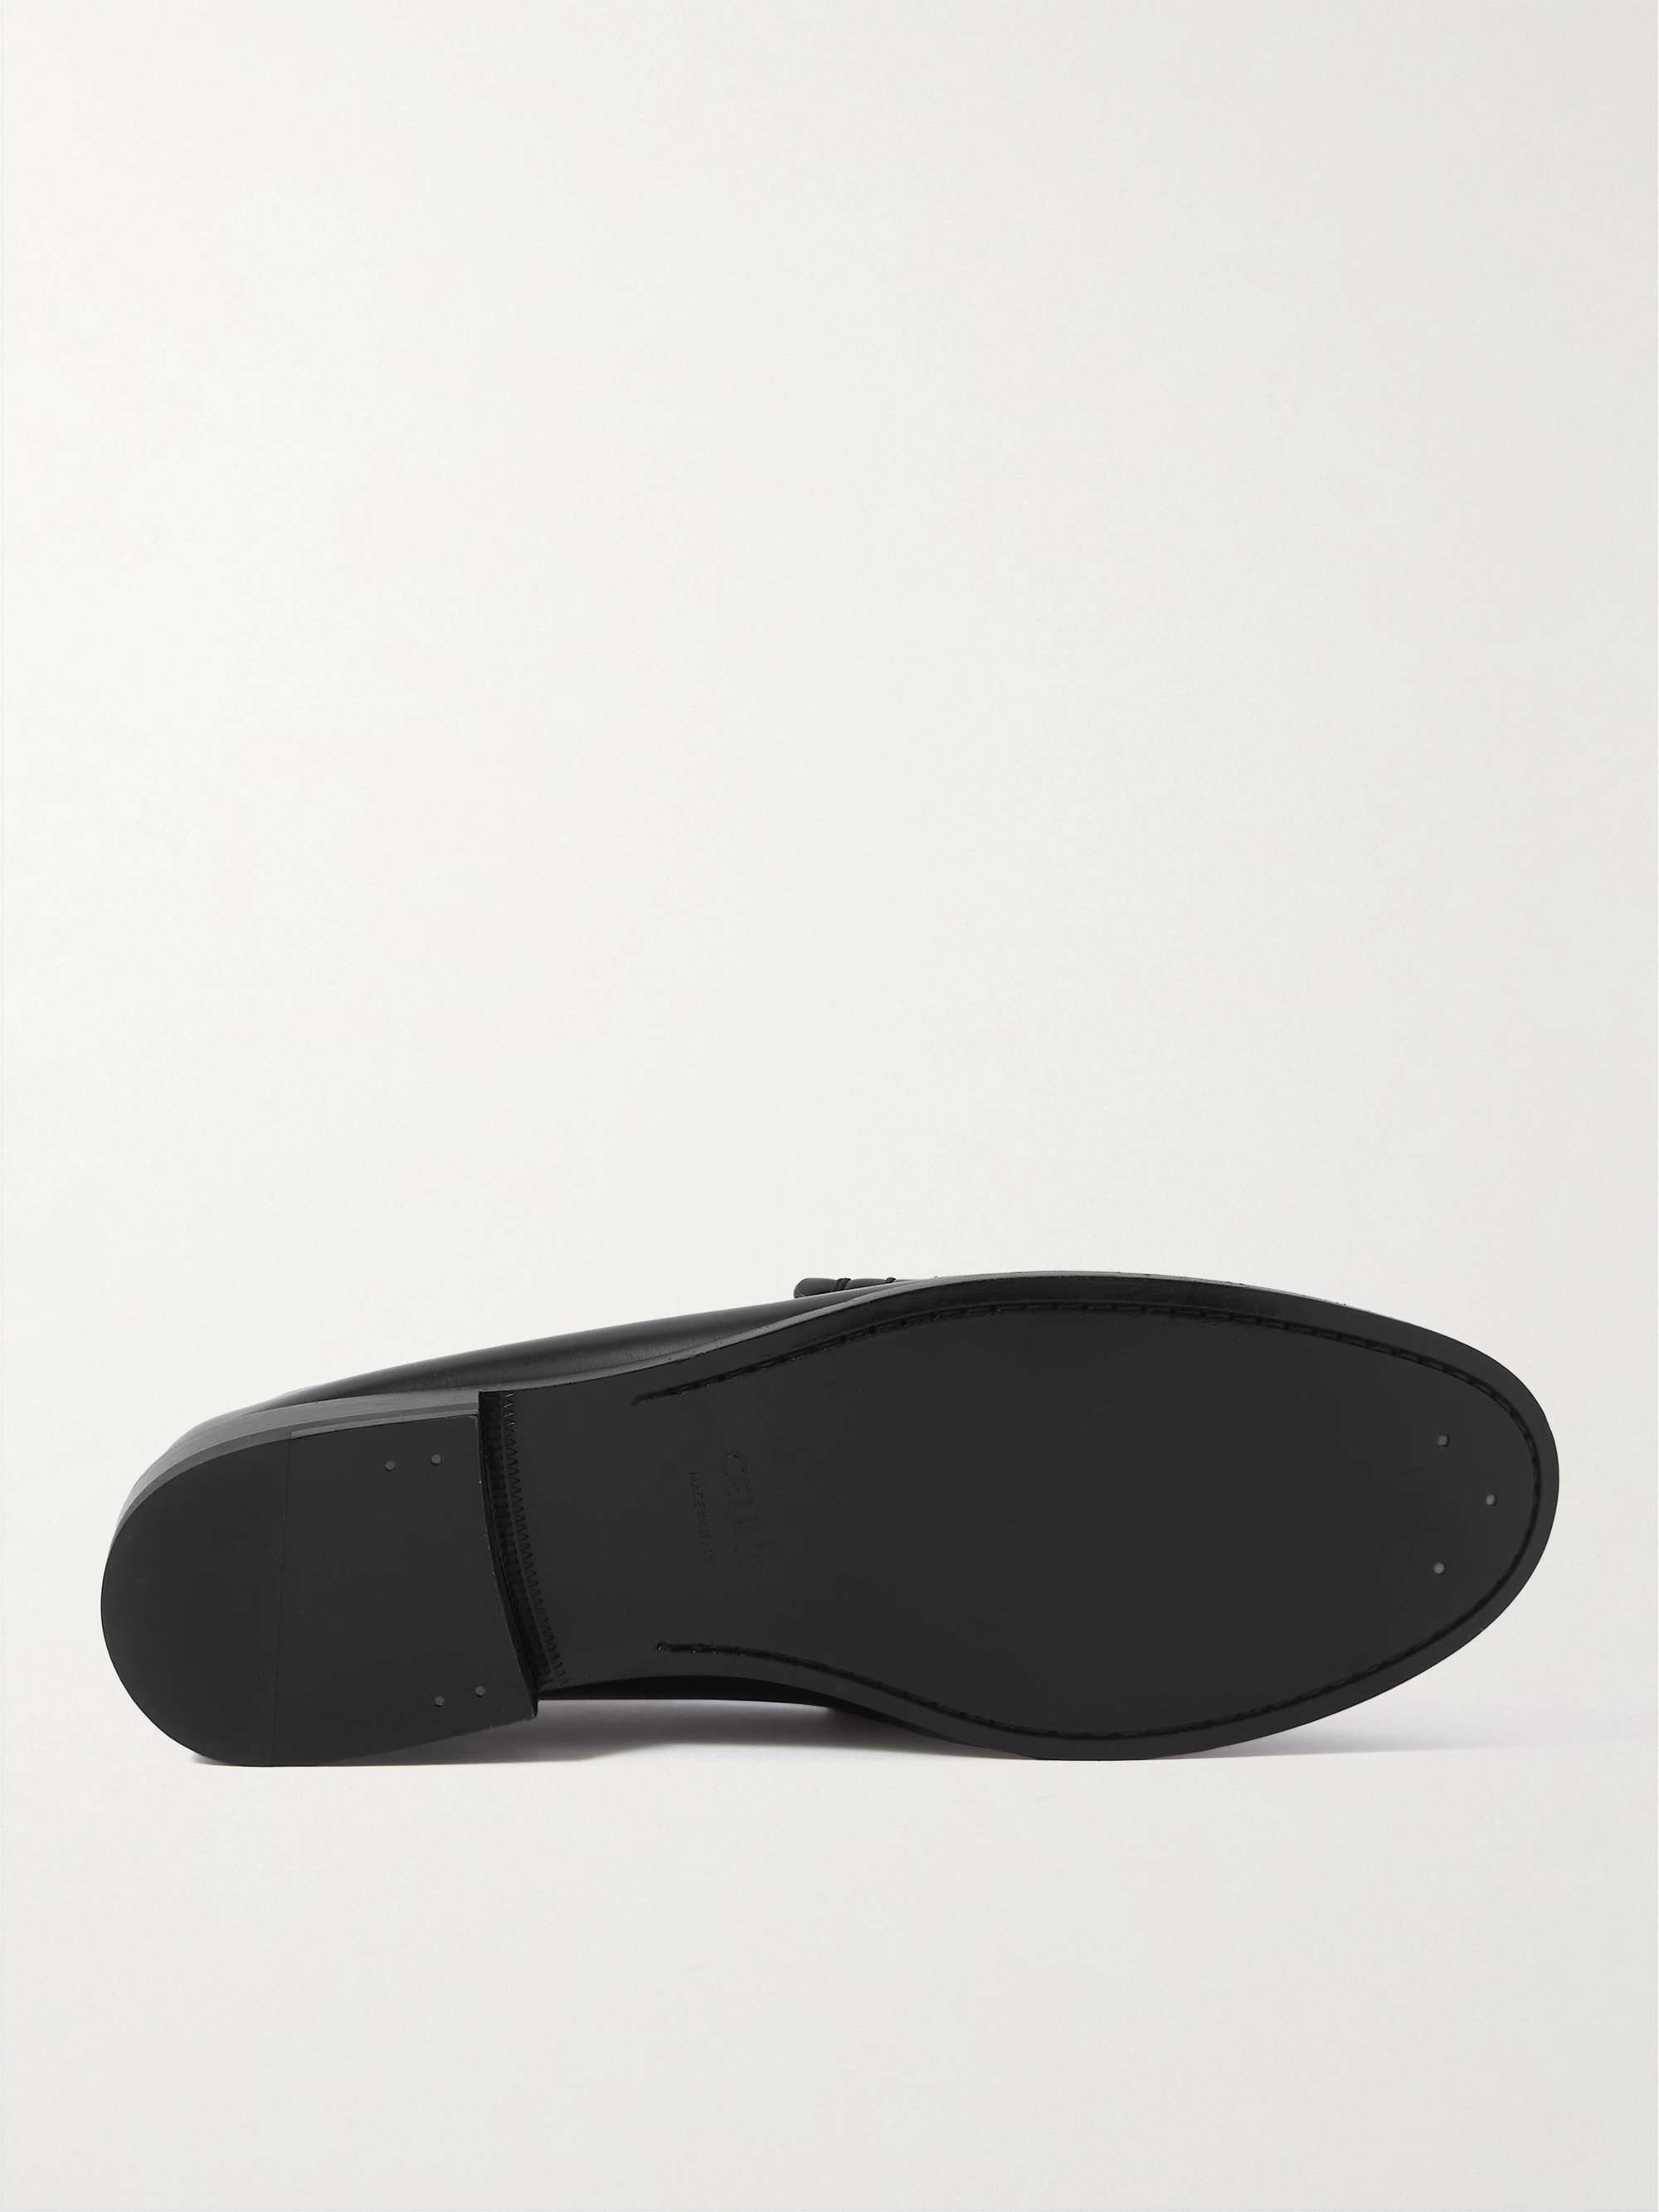 CELINE HOMME Triomphe Logo-Embellished Polished-Leather Loafers